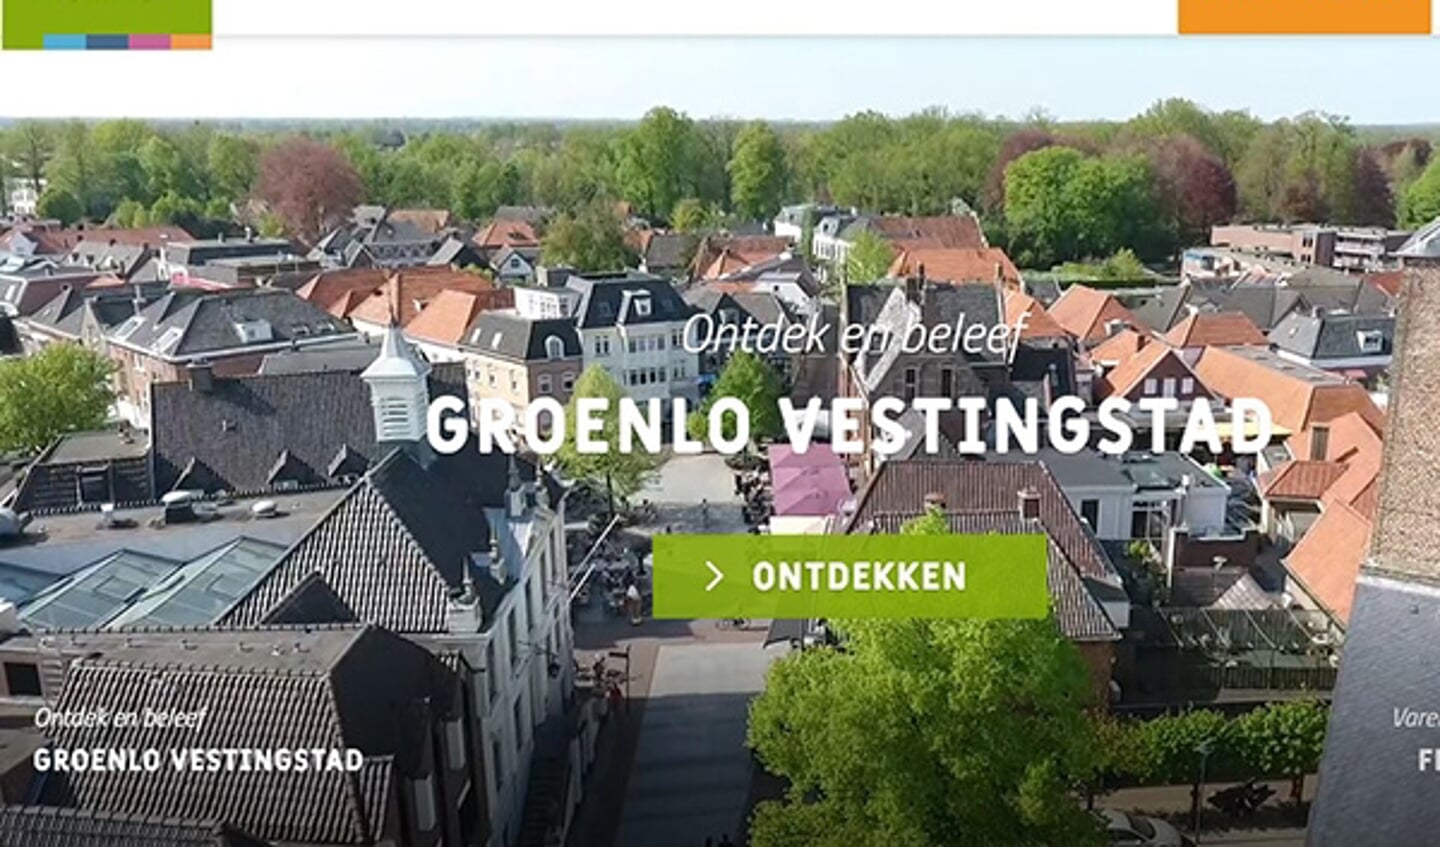 De vernieuwde toeristische website van Groenlo. Foto: PR